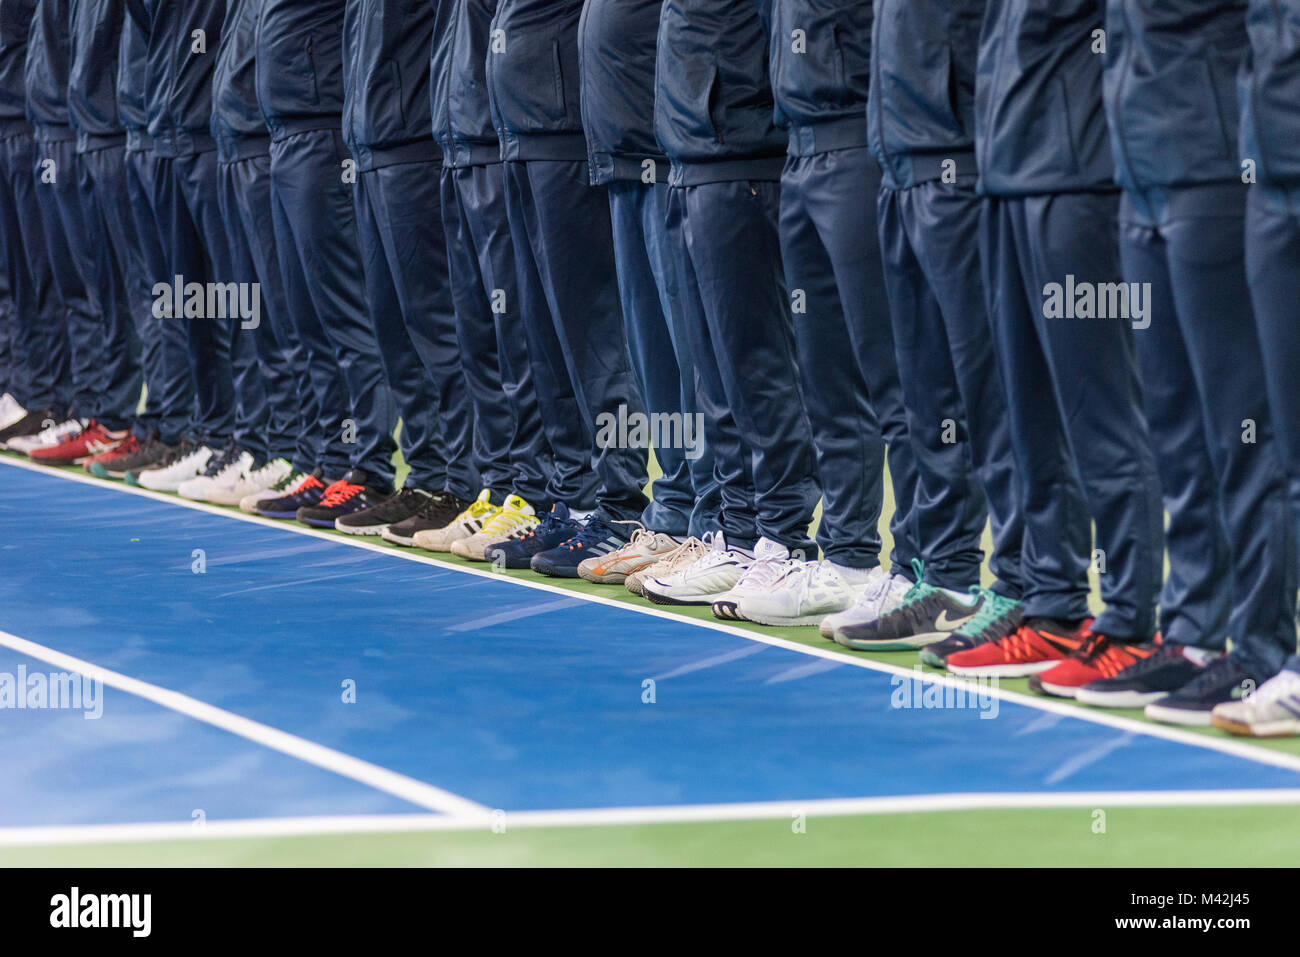 CLUJ NAPOCA, Roumanie - 10 février 2018 : Les arbitres de ligne entrant dans la cour lors de la cérémonie d'ouverture de la Fed Cup Championnat du monde match du groupe b Banque D'Images